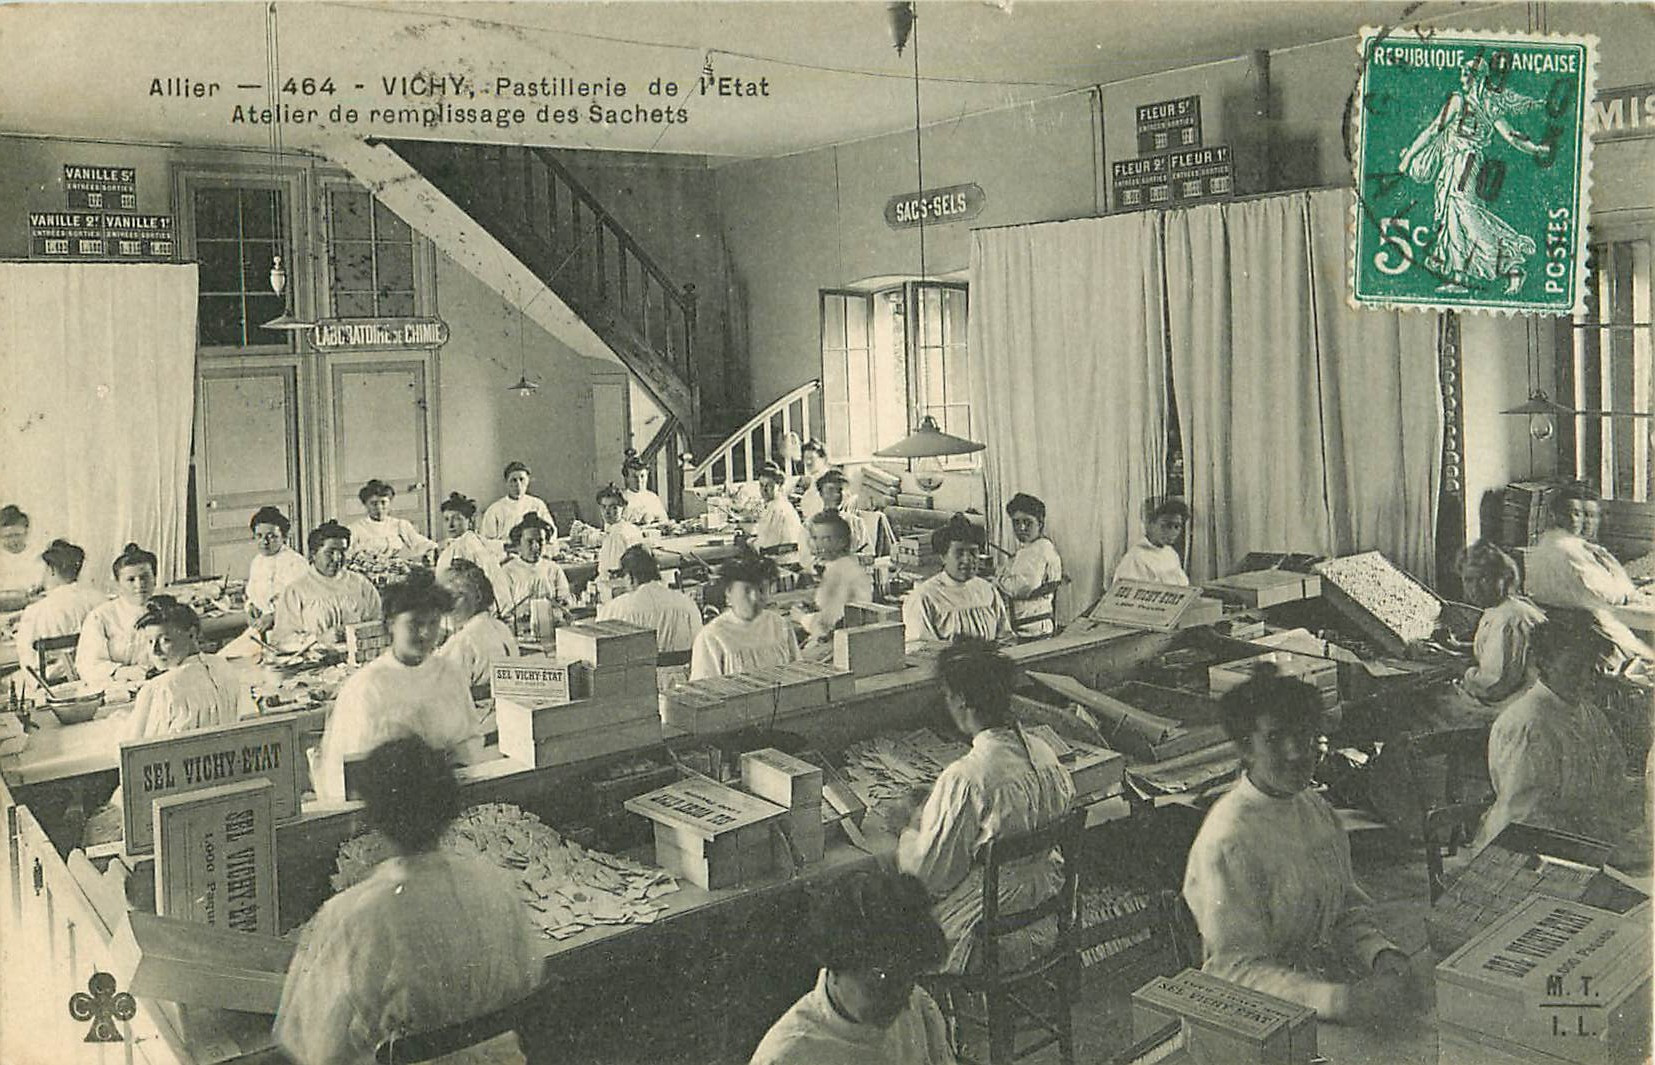 WW 03 VICHY. Atelier remplissage des Sachets à la Pastillerie de l'Etat 1910